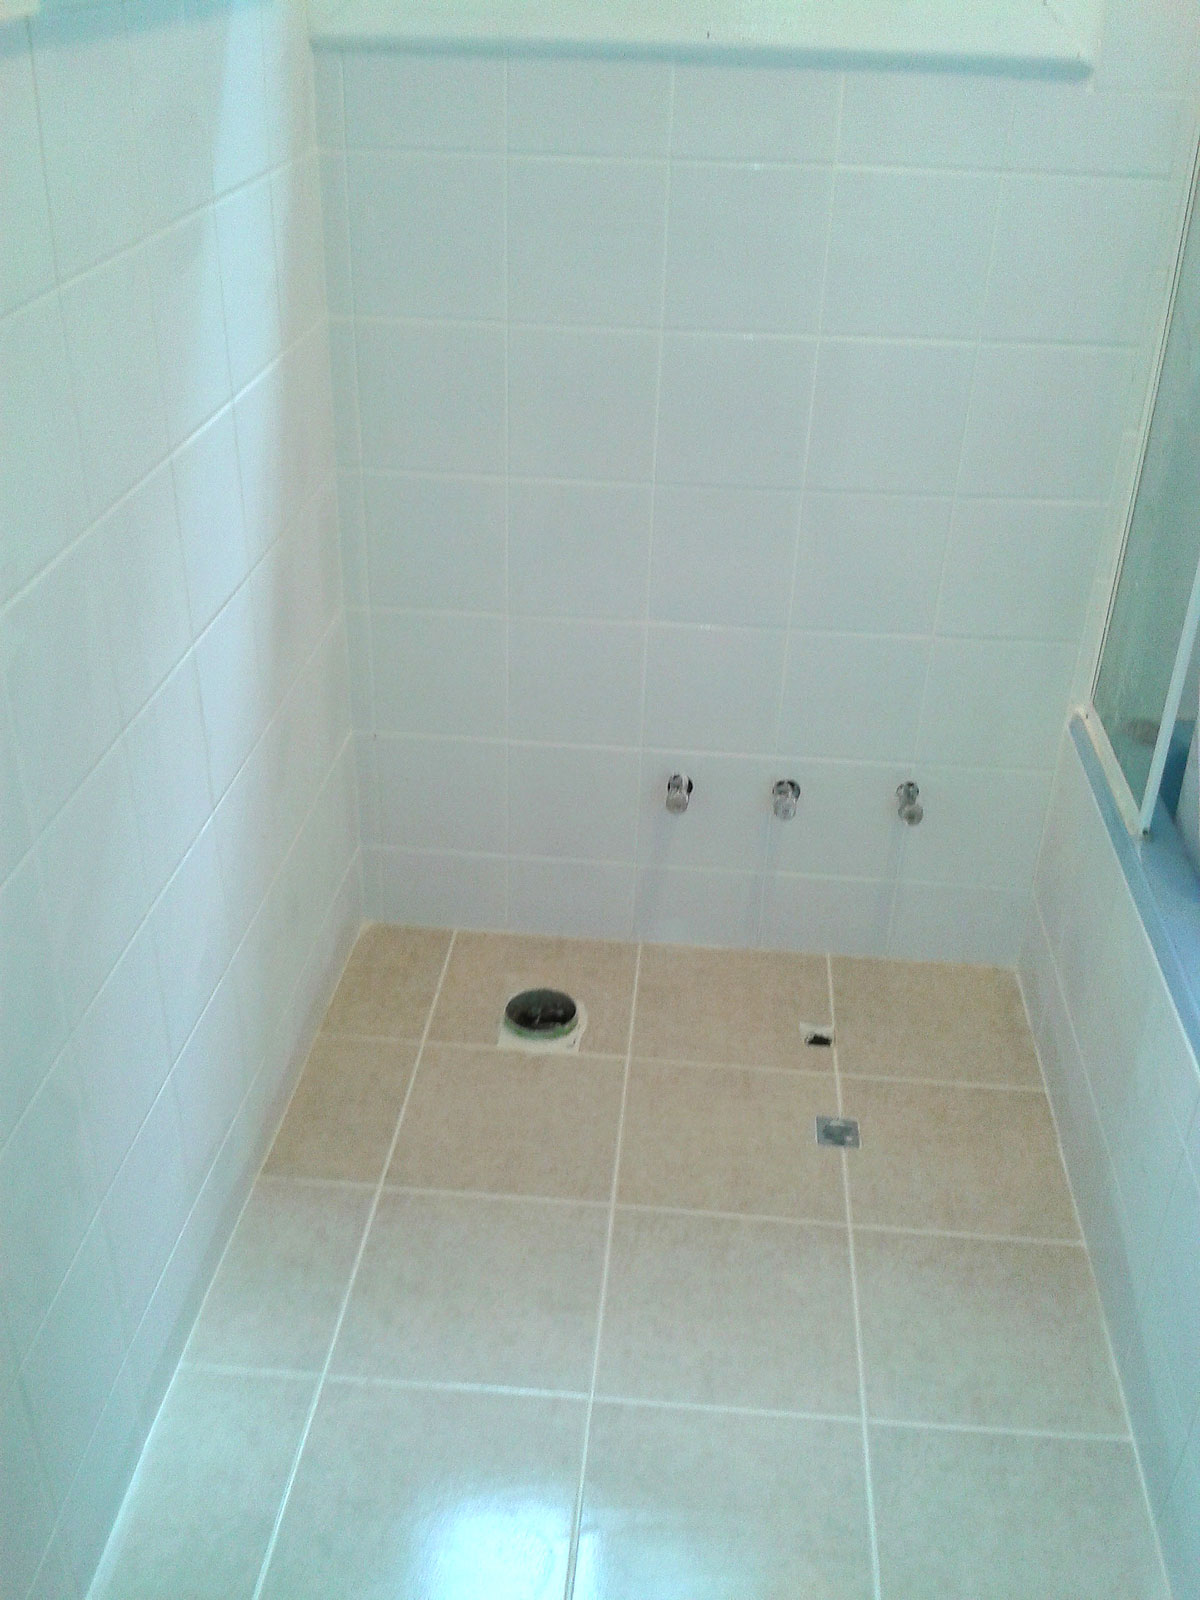 Bathroom renovation – After